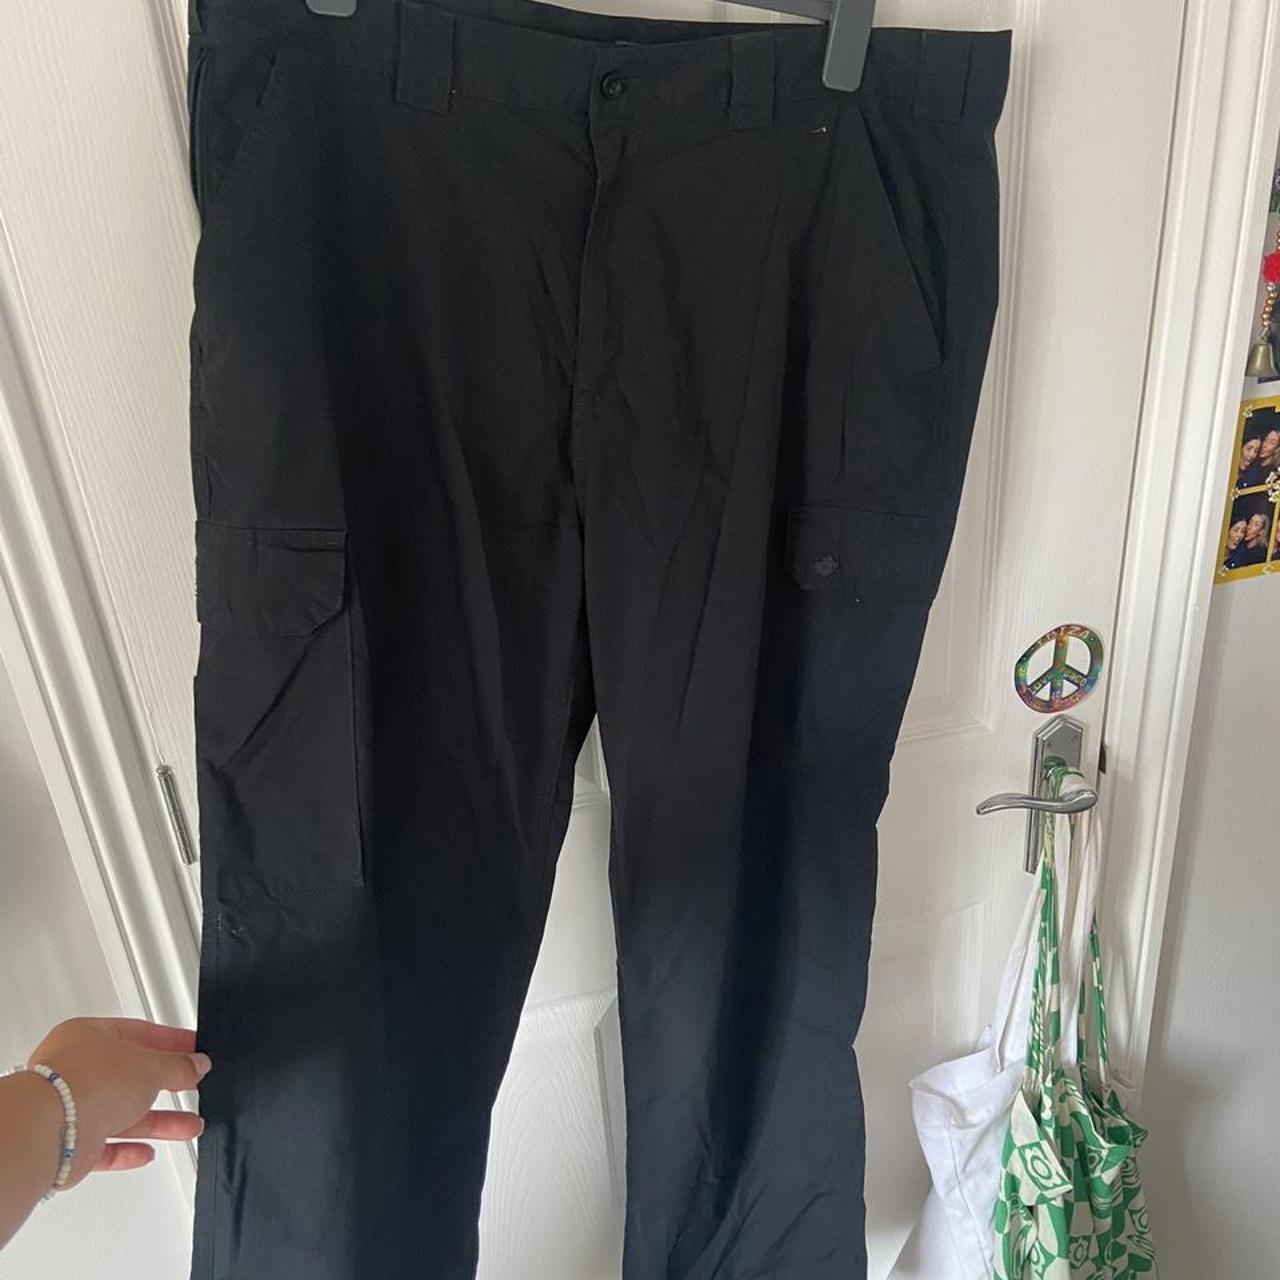 Black cargo pants/trousers - mens (size 38R) but... - Depop